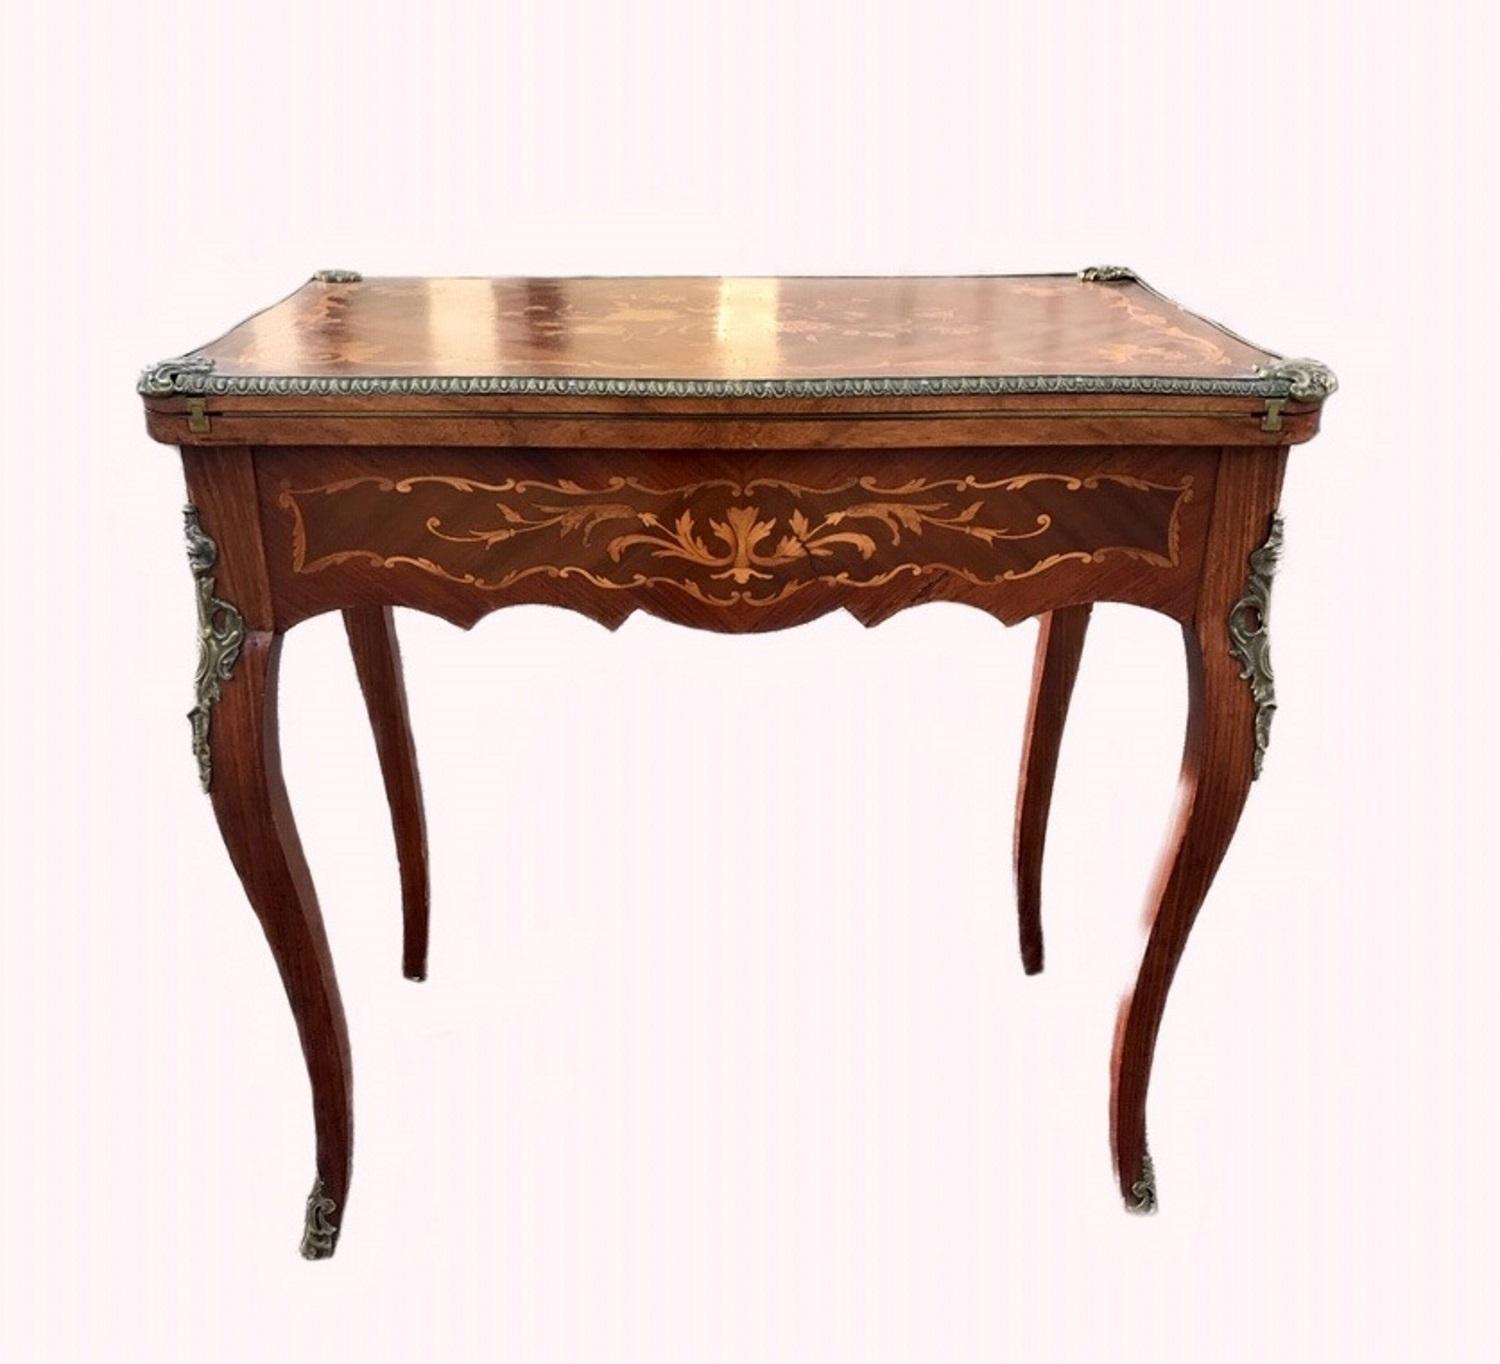 Dieser wunderbare Spieltisch aus dem späten 19. Jahrhundert in Mahagoni-Furnier ist exquisit
mit floralen Intarsien aus Königsholz und Satinholz auf allen Seiten eingelegt. Er hat Bronzebeschläge und Cabriole-Beine:: die in Bronzefüßen enden. Der